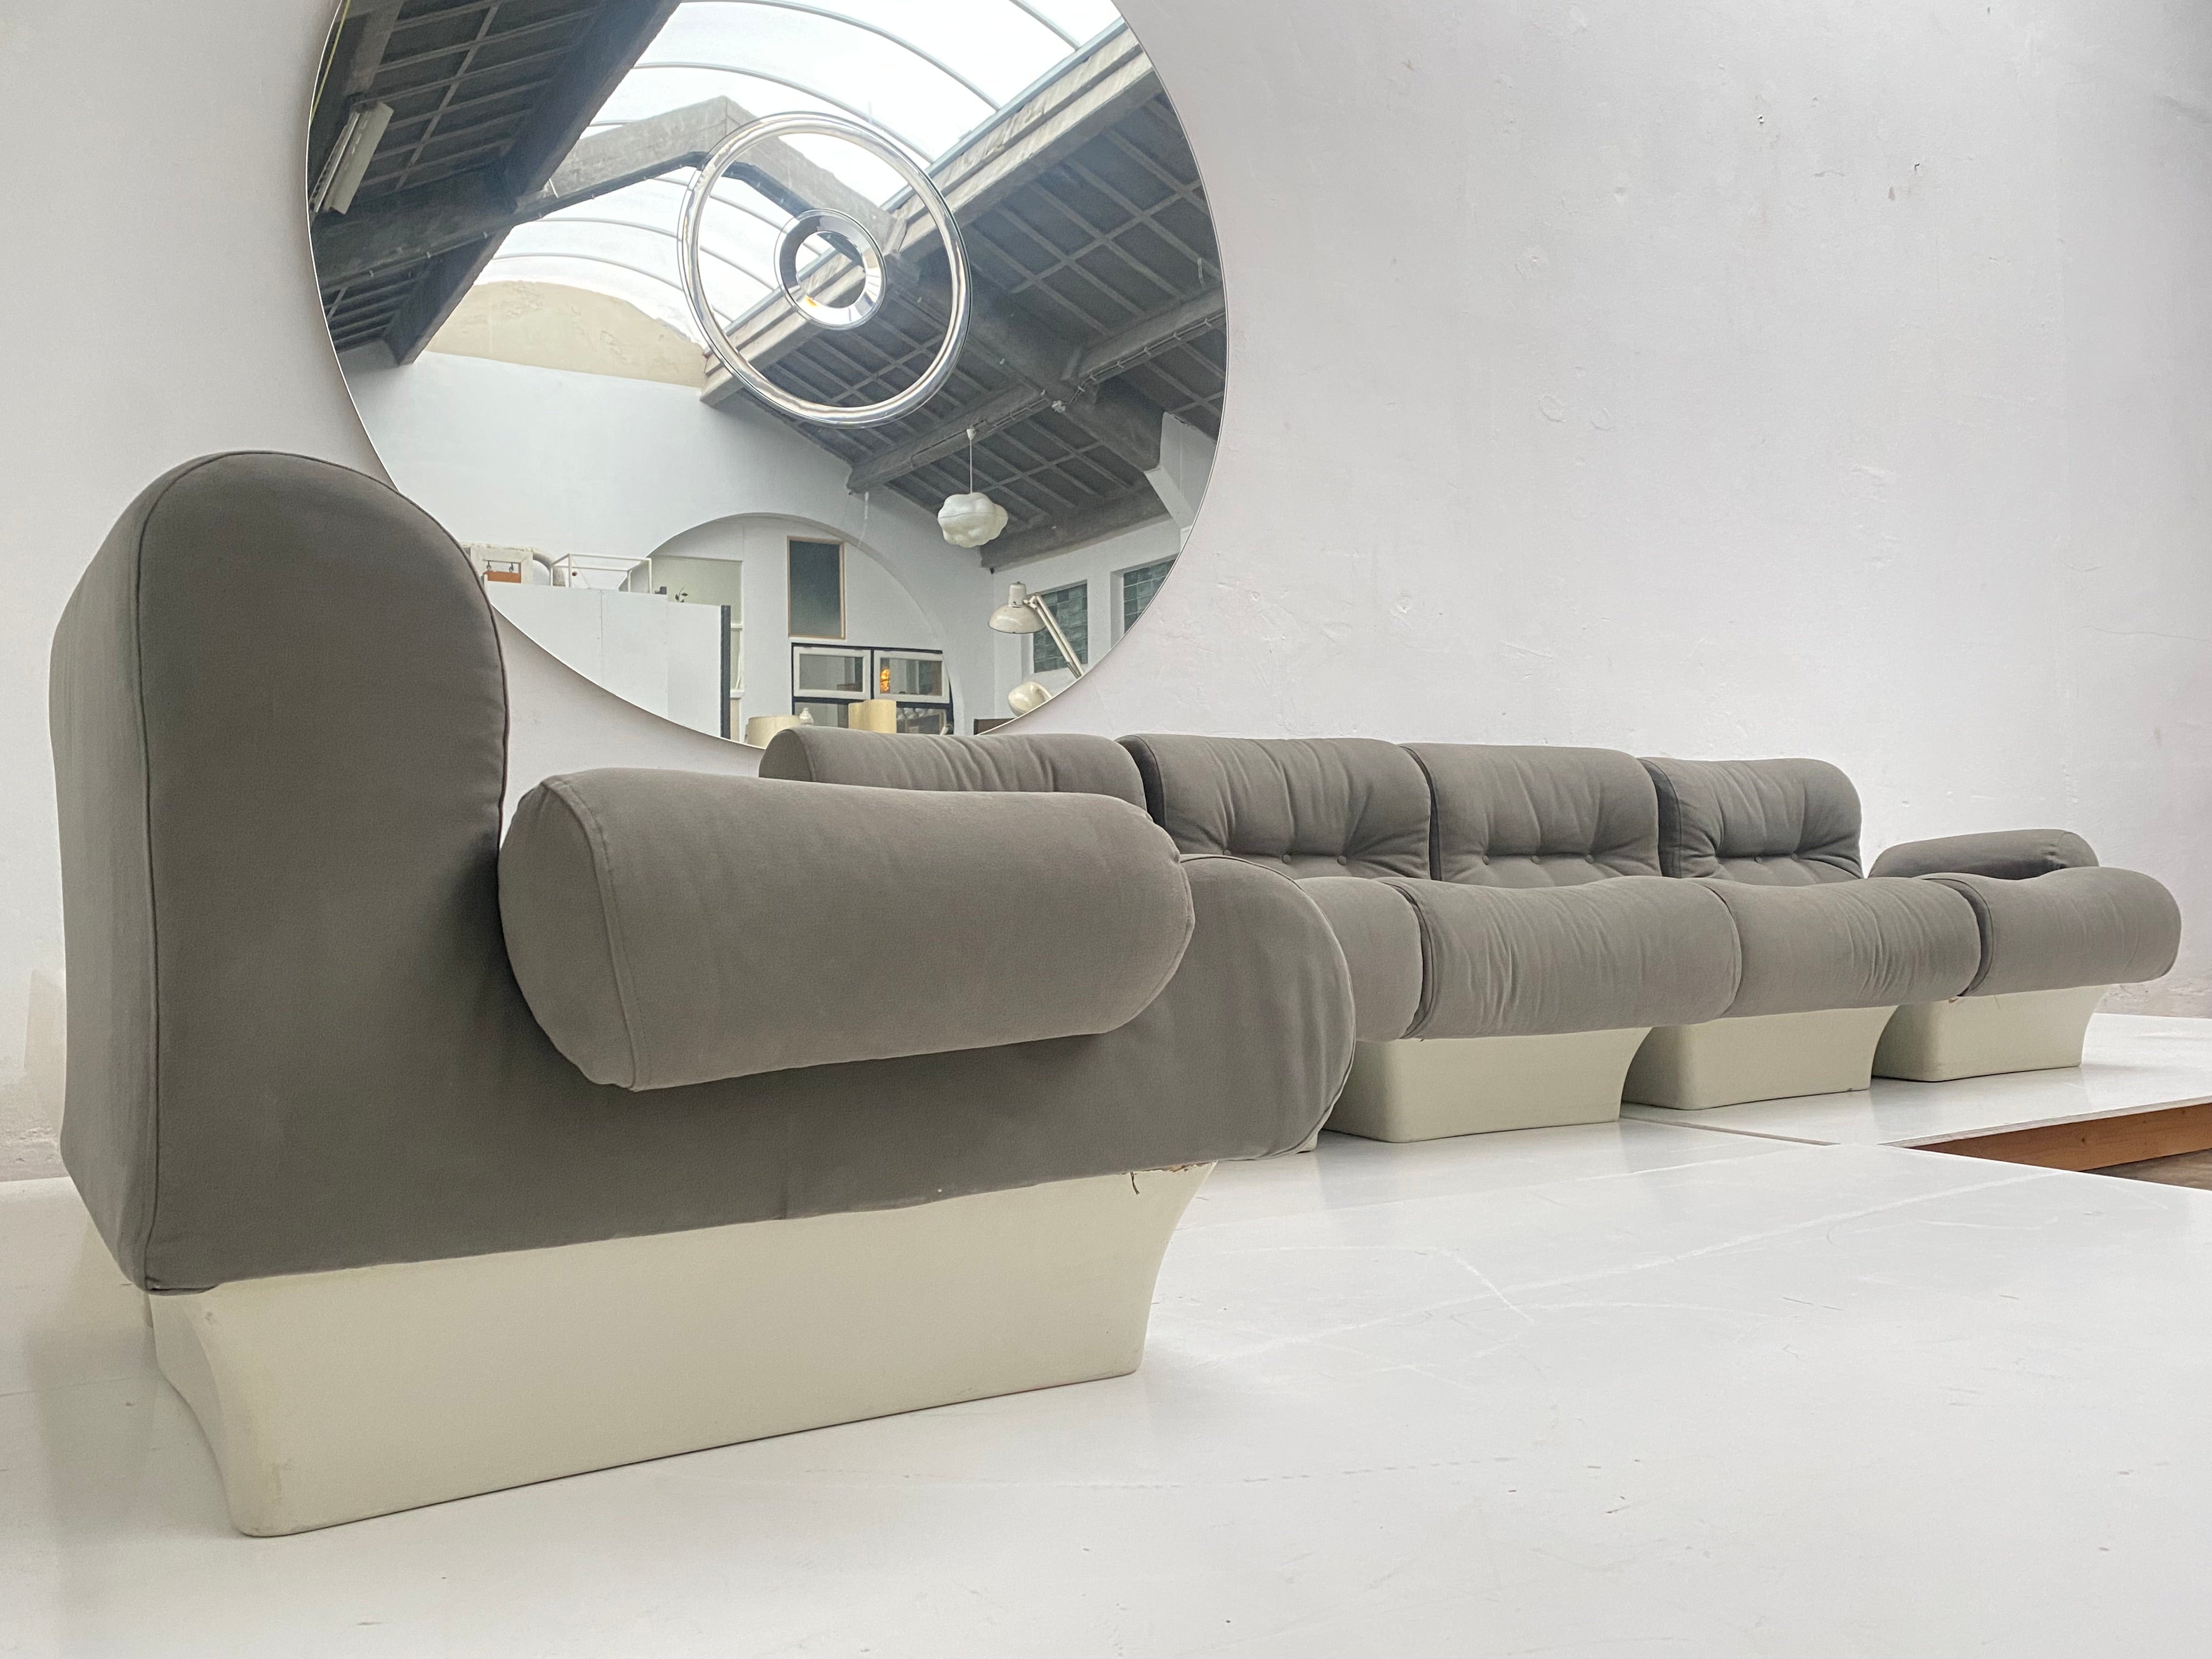 Hier haben wir eine sehr seltene Gelegenheit, ein großes Set von fünf Otto Zapf  1967 'sofalette'  modulare Sitzelemente und ein sehr seltener 'Sofalette'-Ecktisch aus Fiberglas  
Neu gepolstert in 100% Baumwolle Canvas von Romo und kommt komplett